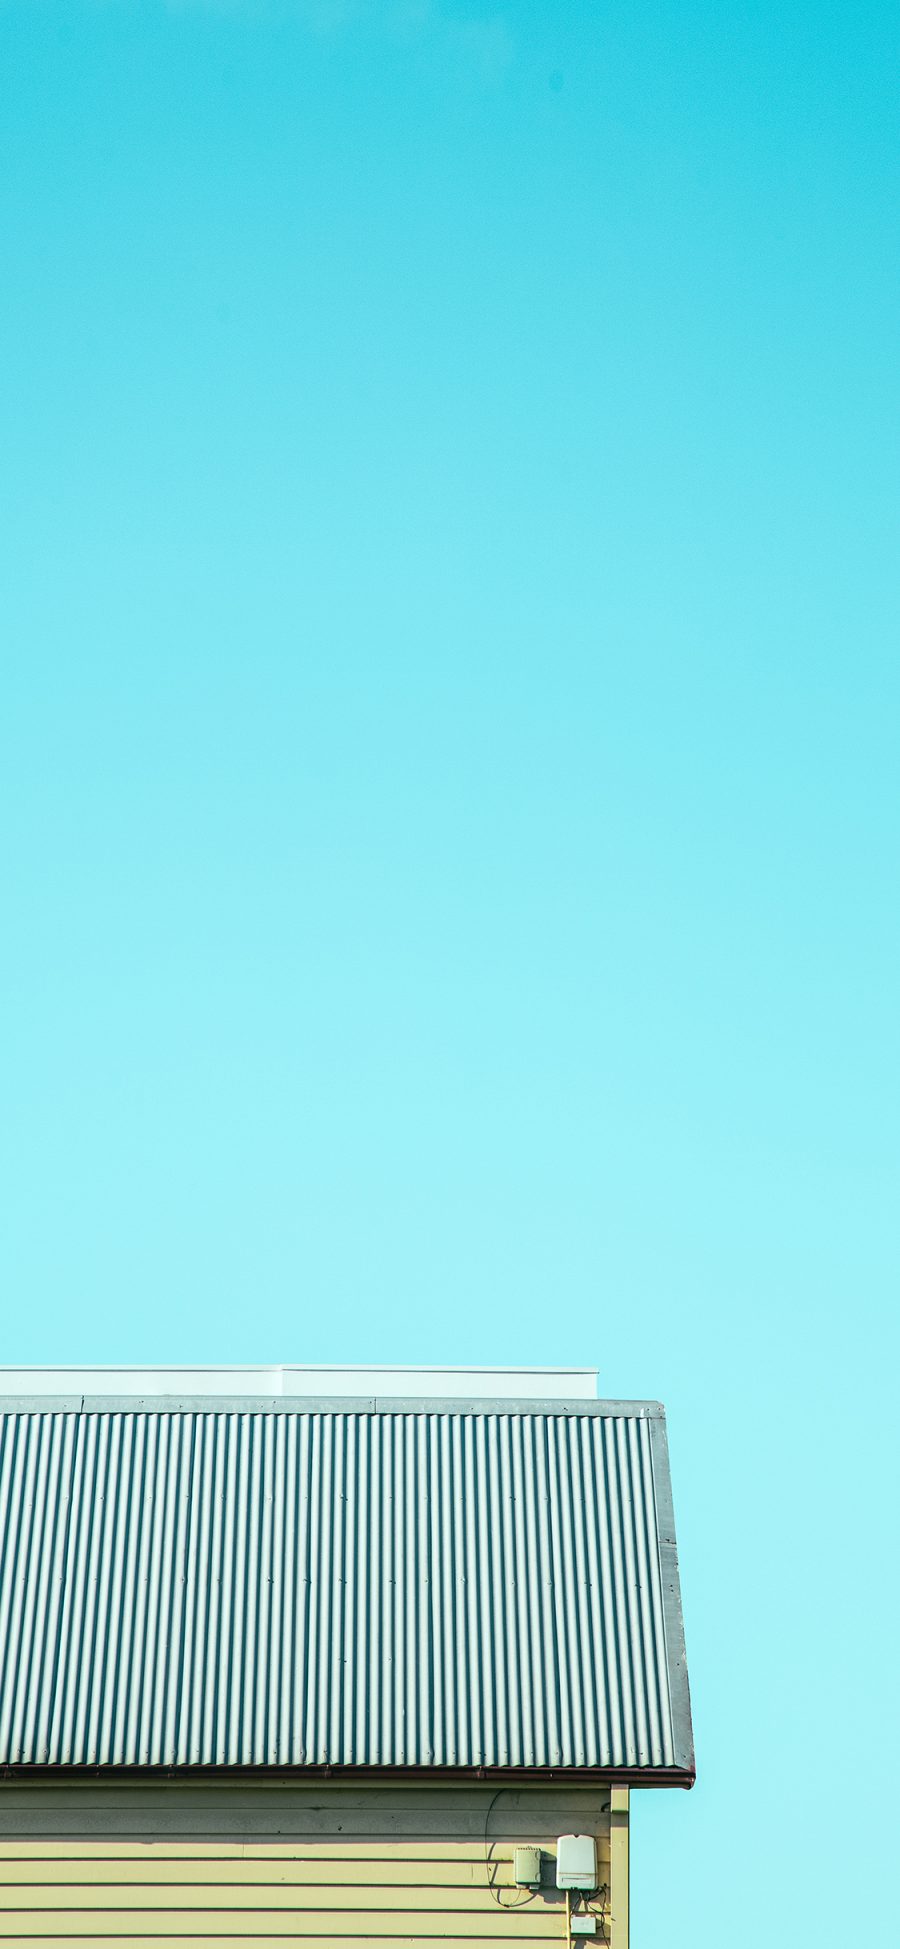 [2436×1125]屋顶 蓝色 天空 唯美 苹果手机壁纸图片